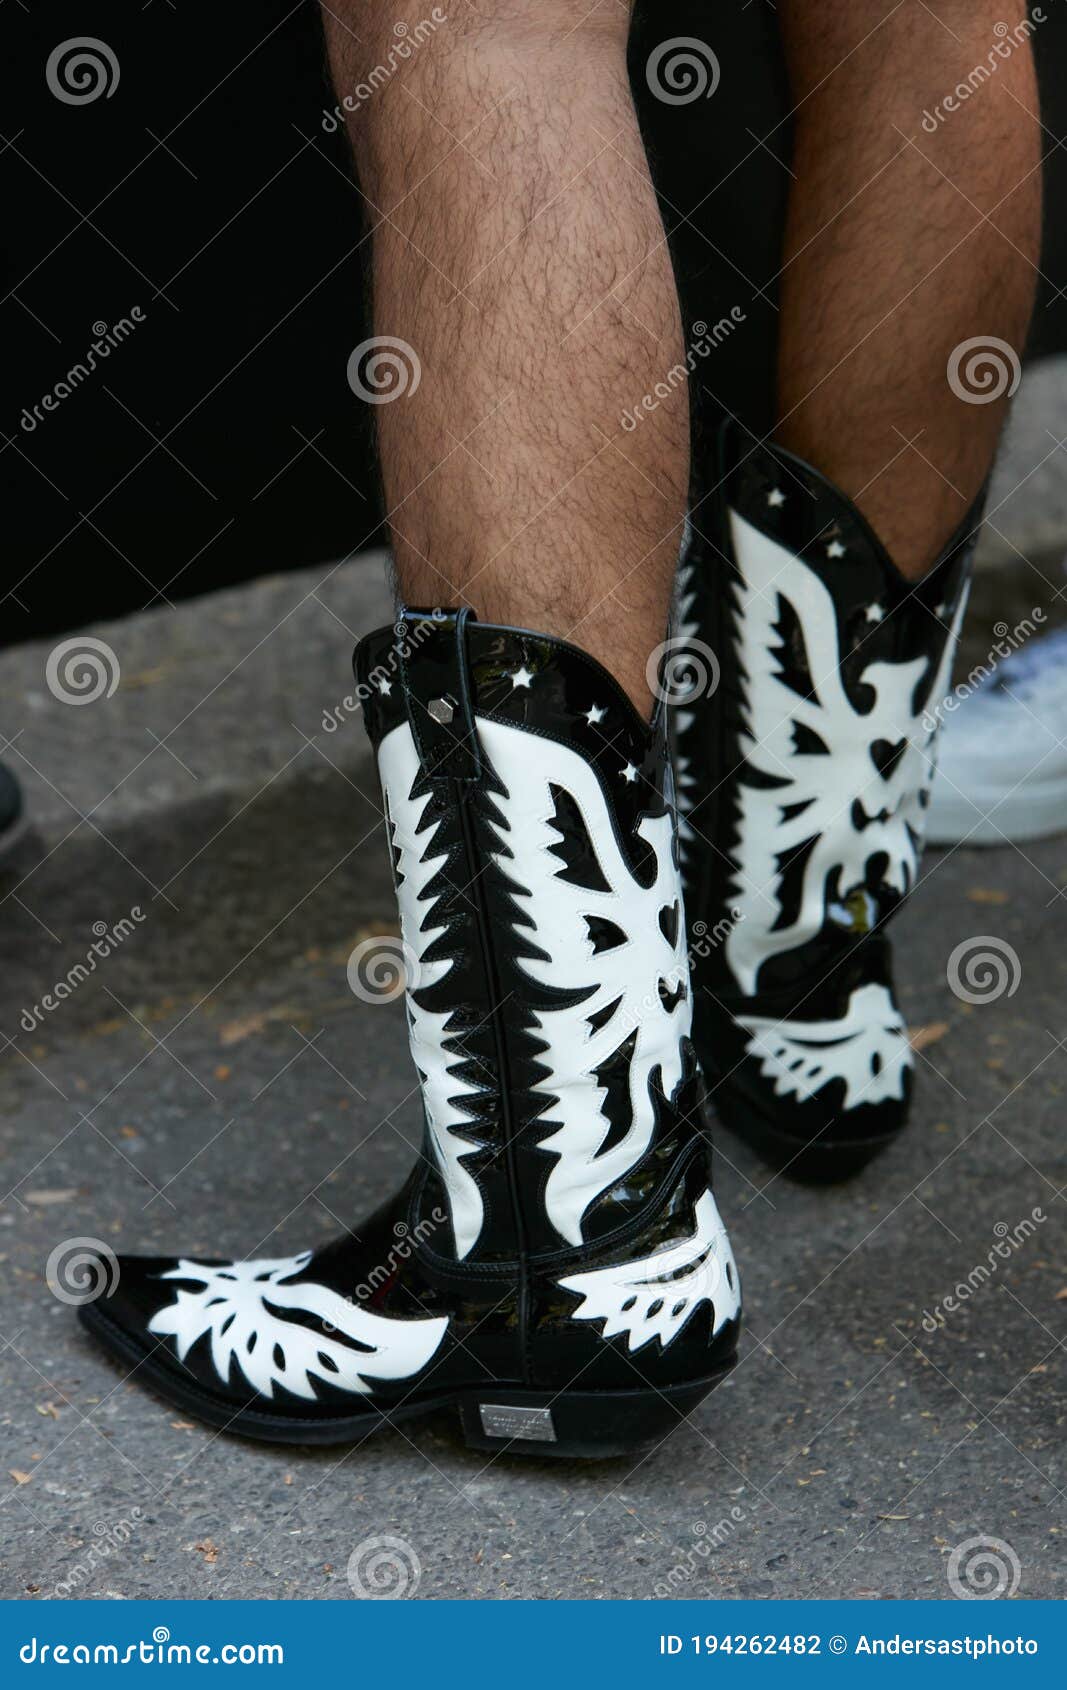 fendi black and white boots